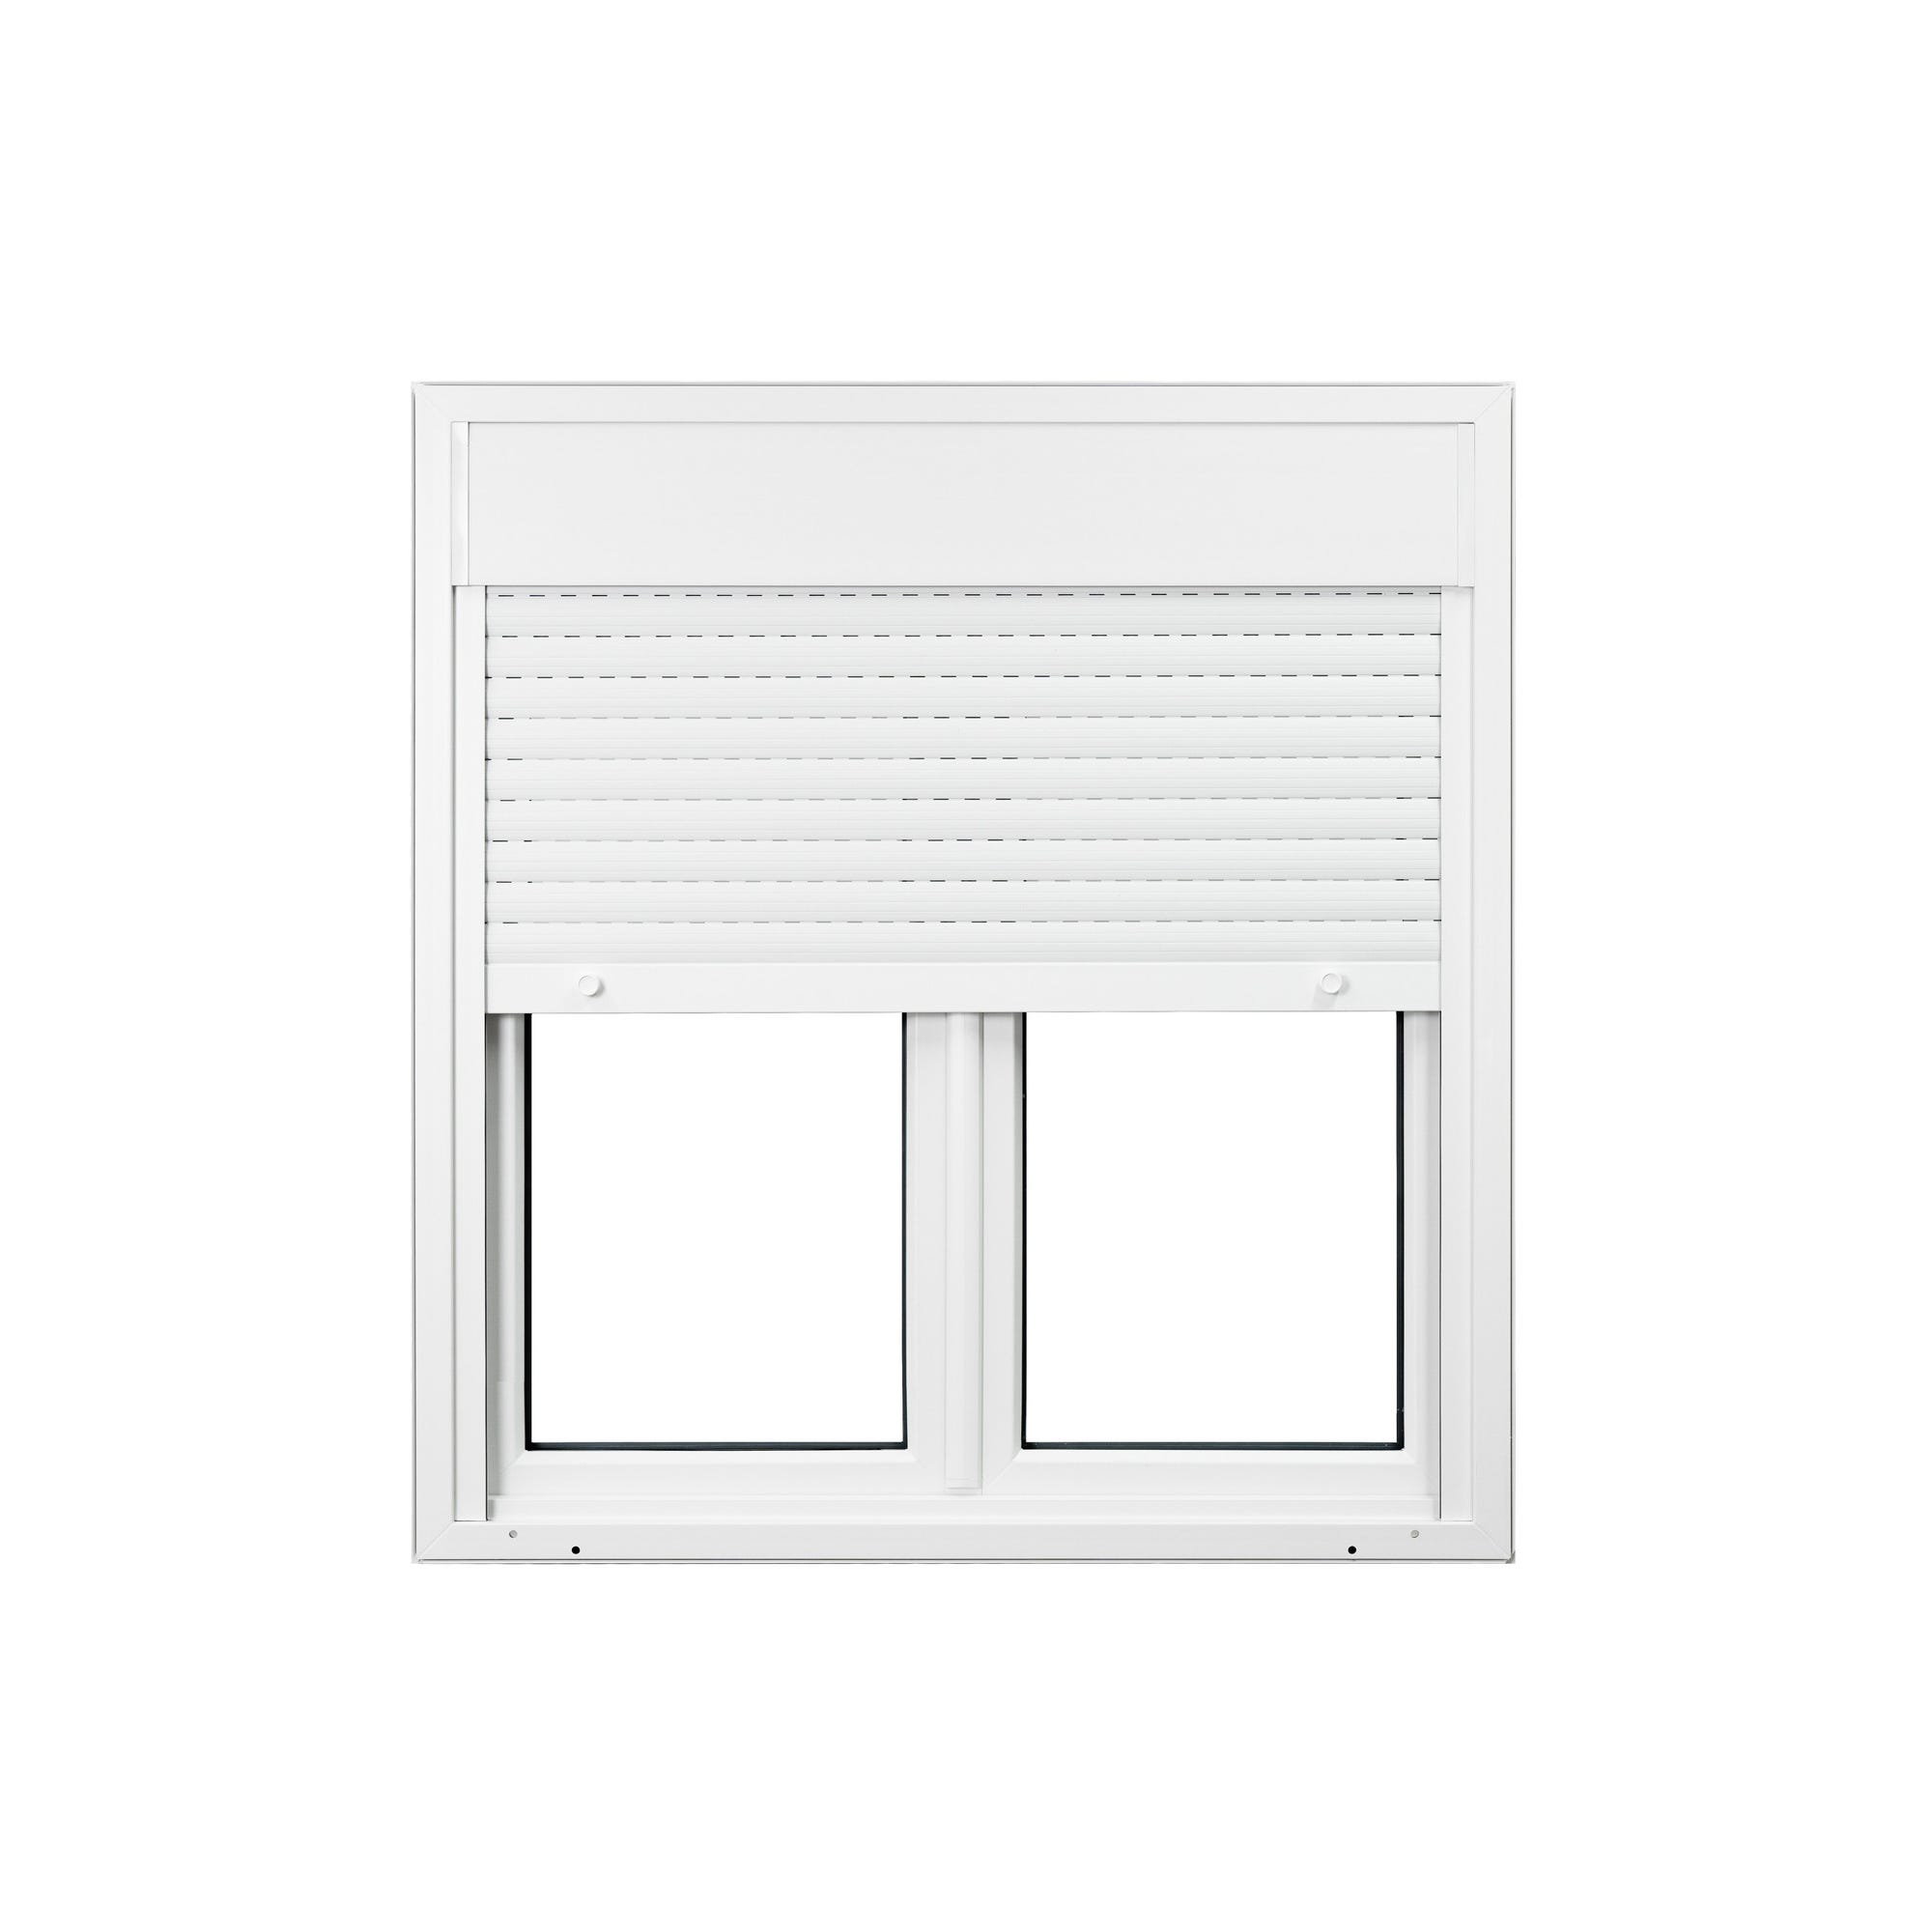 Fenêtre PVC avec volet roulant intégré monobloc Ob 2 vantaux H.125 x L.140 cm - GROSFILLEX 2